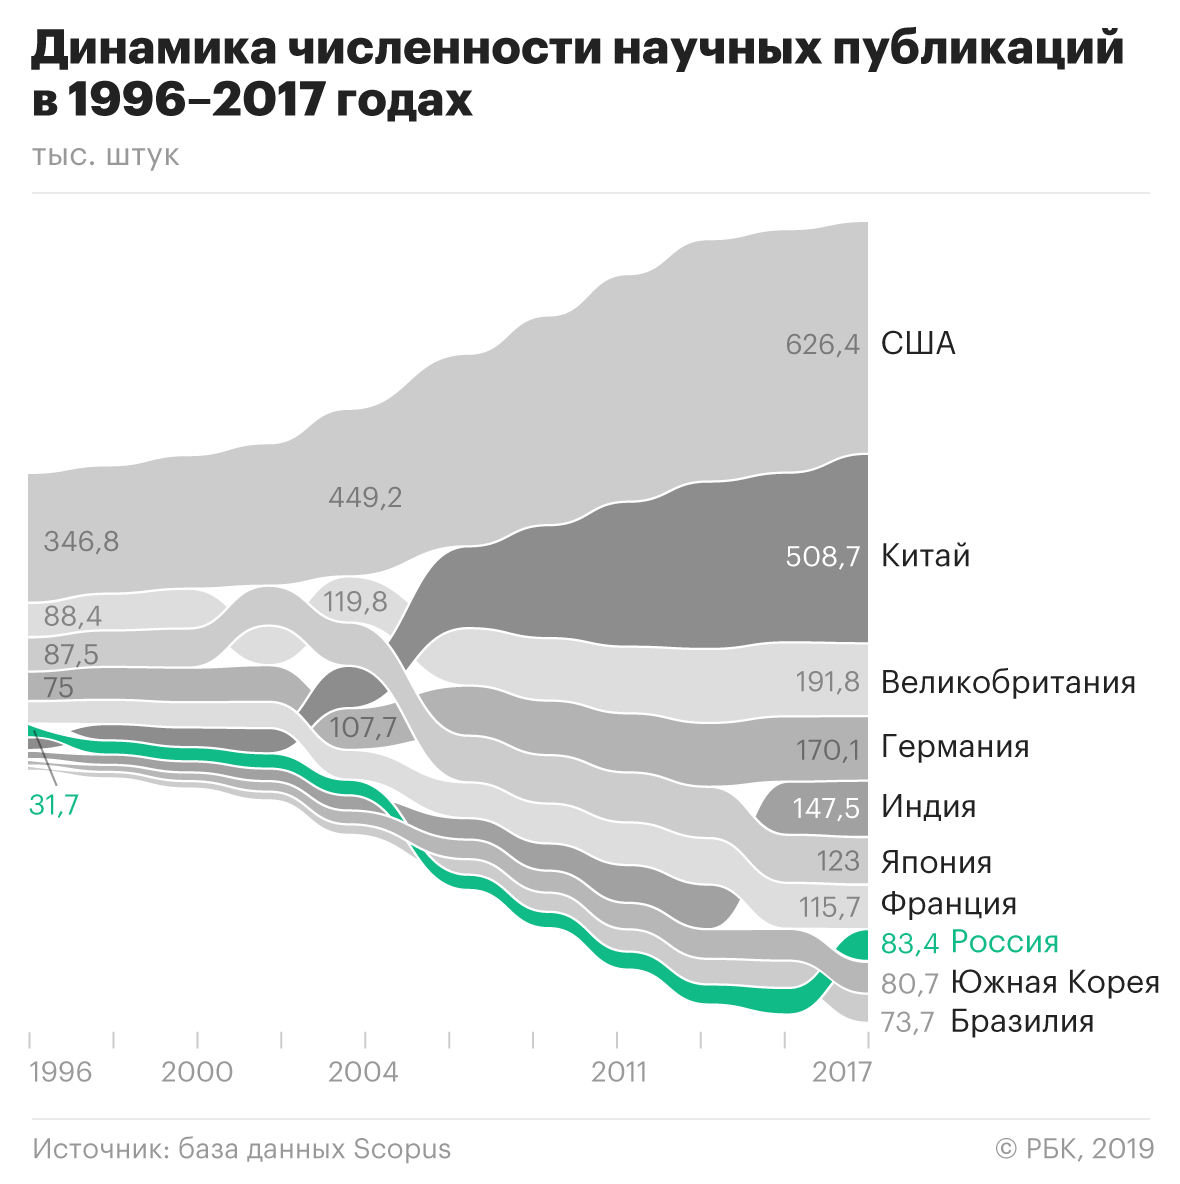 Постатейный рост: что мешает стабильному развитию российской науки